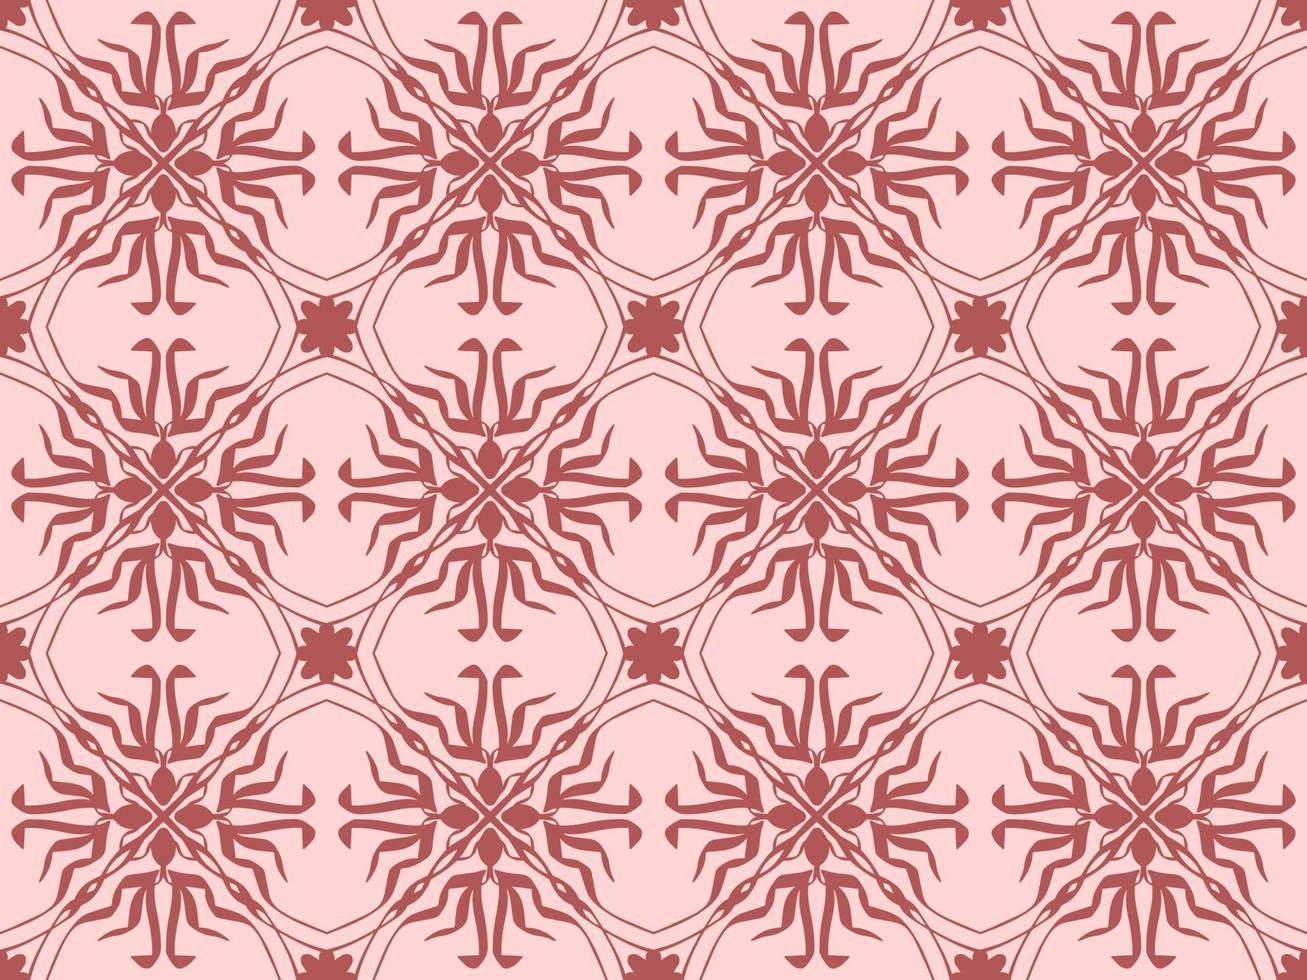 roze meetkundig naadloos patroon met tribal vorm geven aan. patroon ontworpen in ikat, azteeks, marokkaans, Thais, luxe Arabisch stijl. ideaal voor kleding stof kledingstuk, keramiek, behang. vector illustratie.